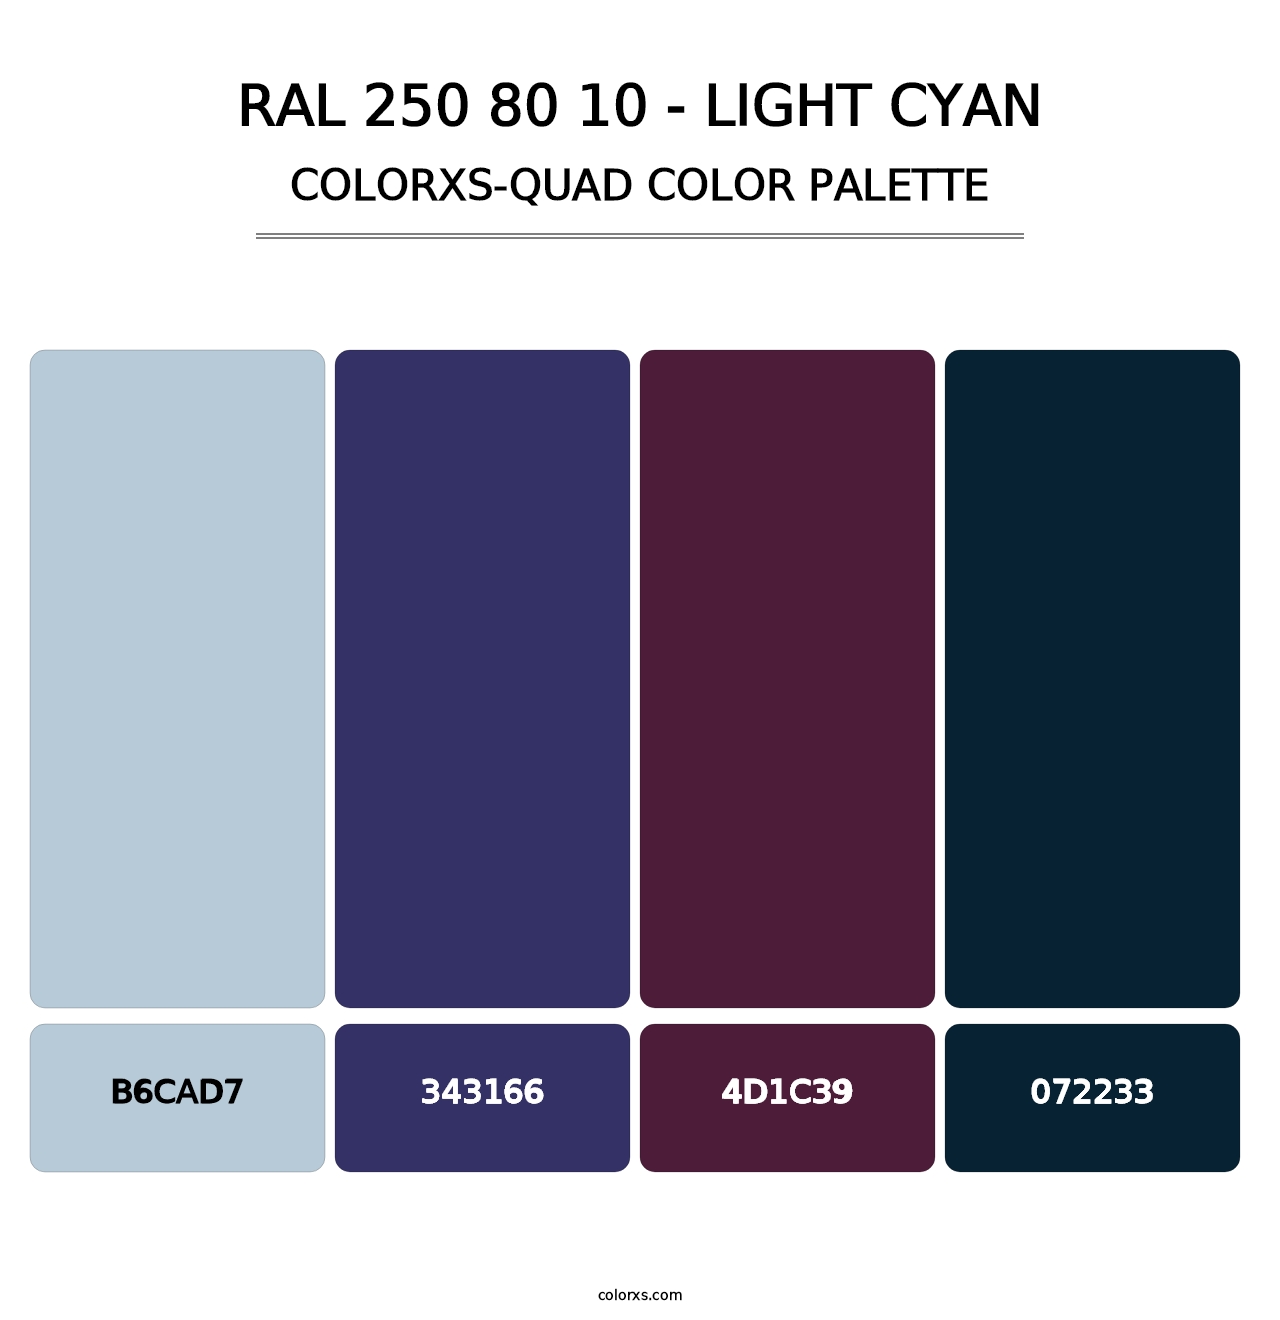 RAL 250 80 10 - Light Cyan - Colorxs Quad Palette